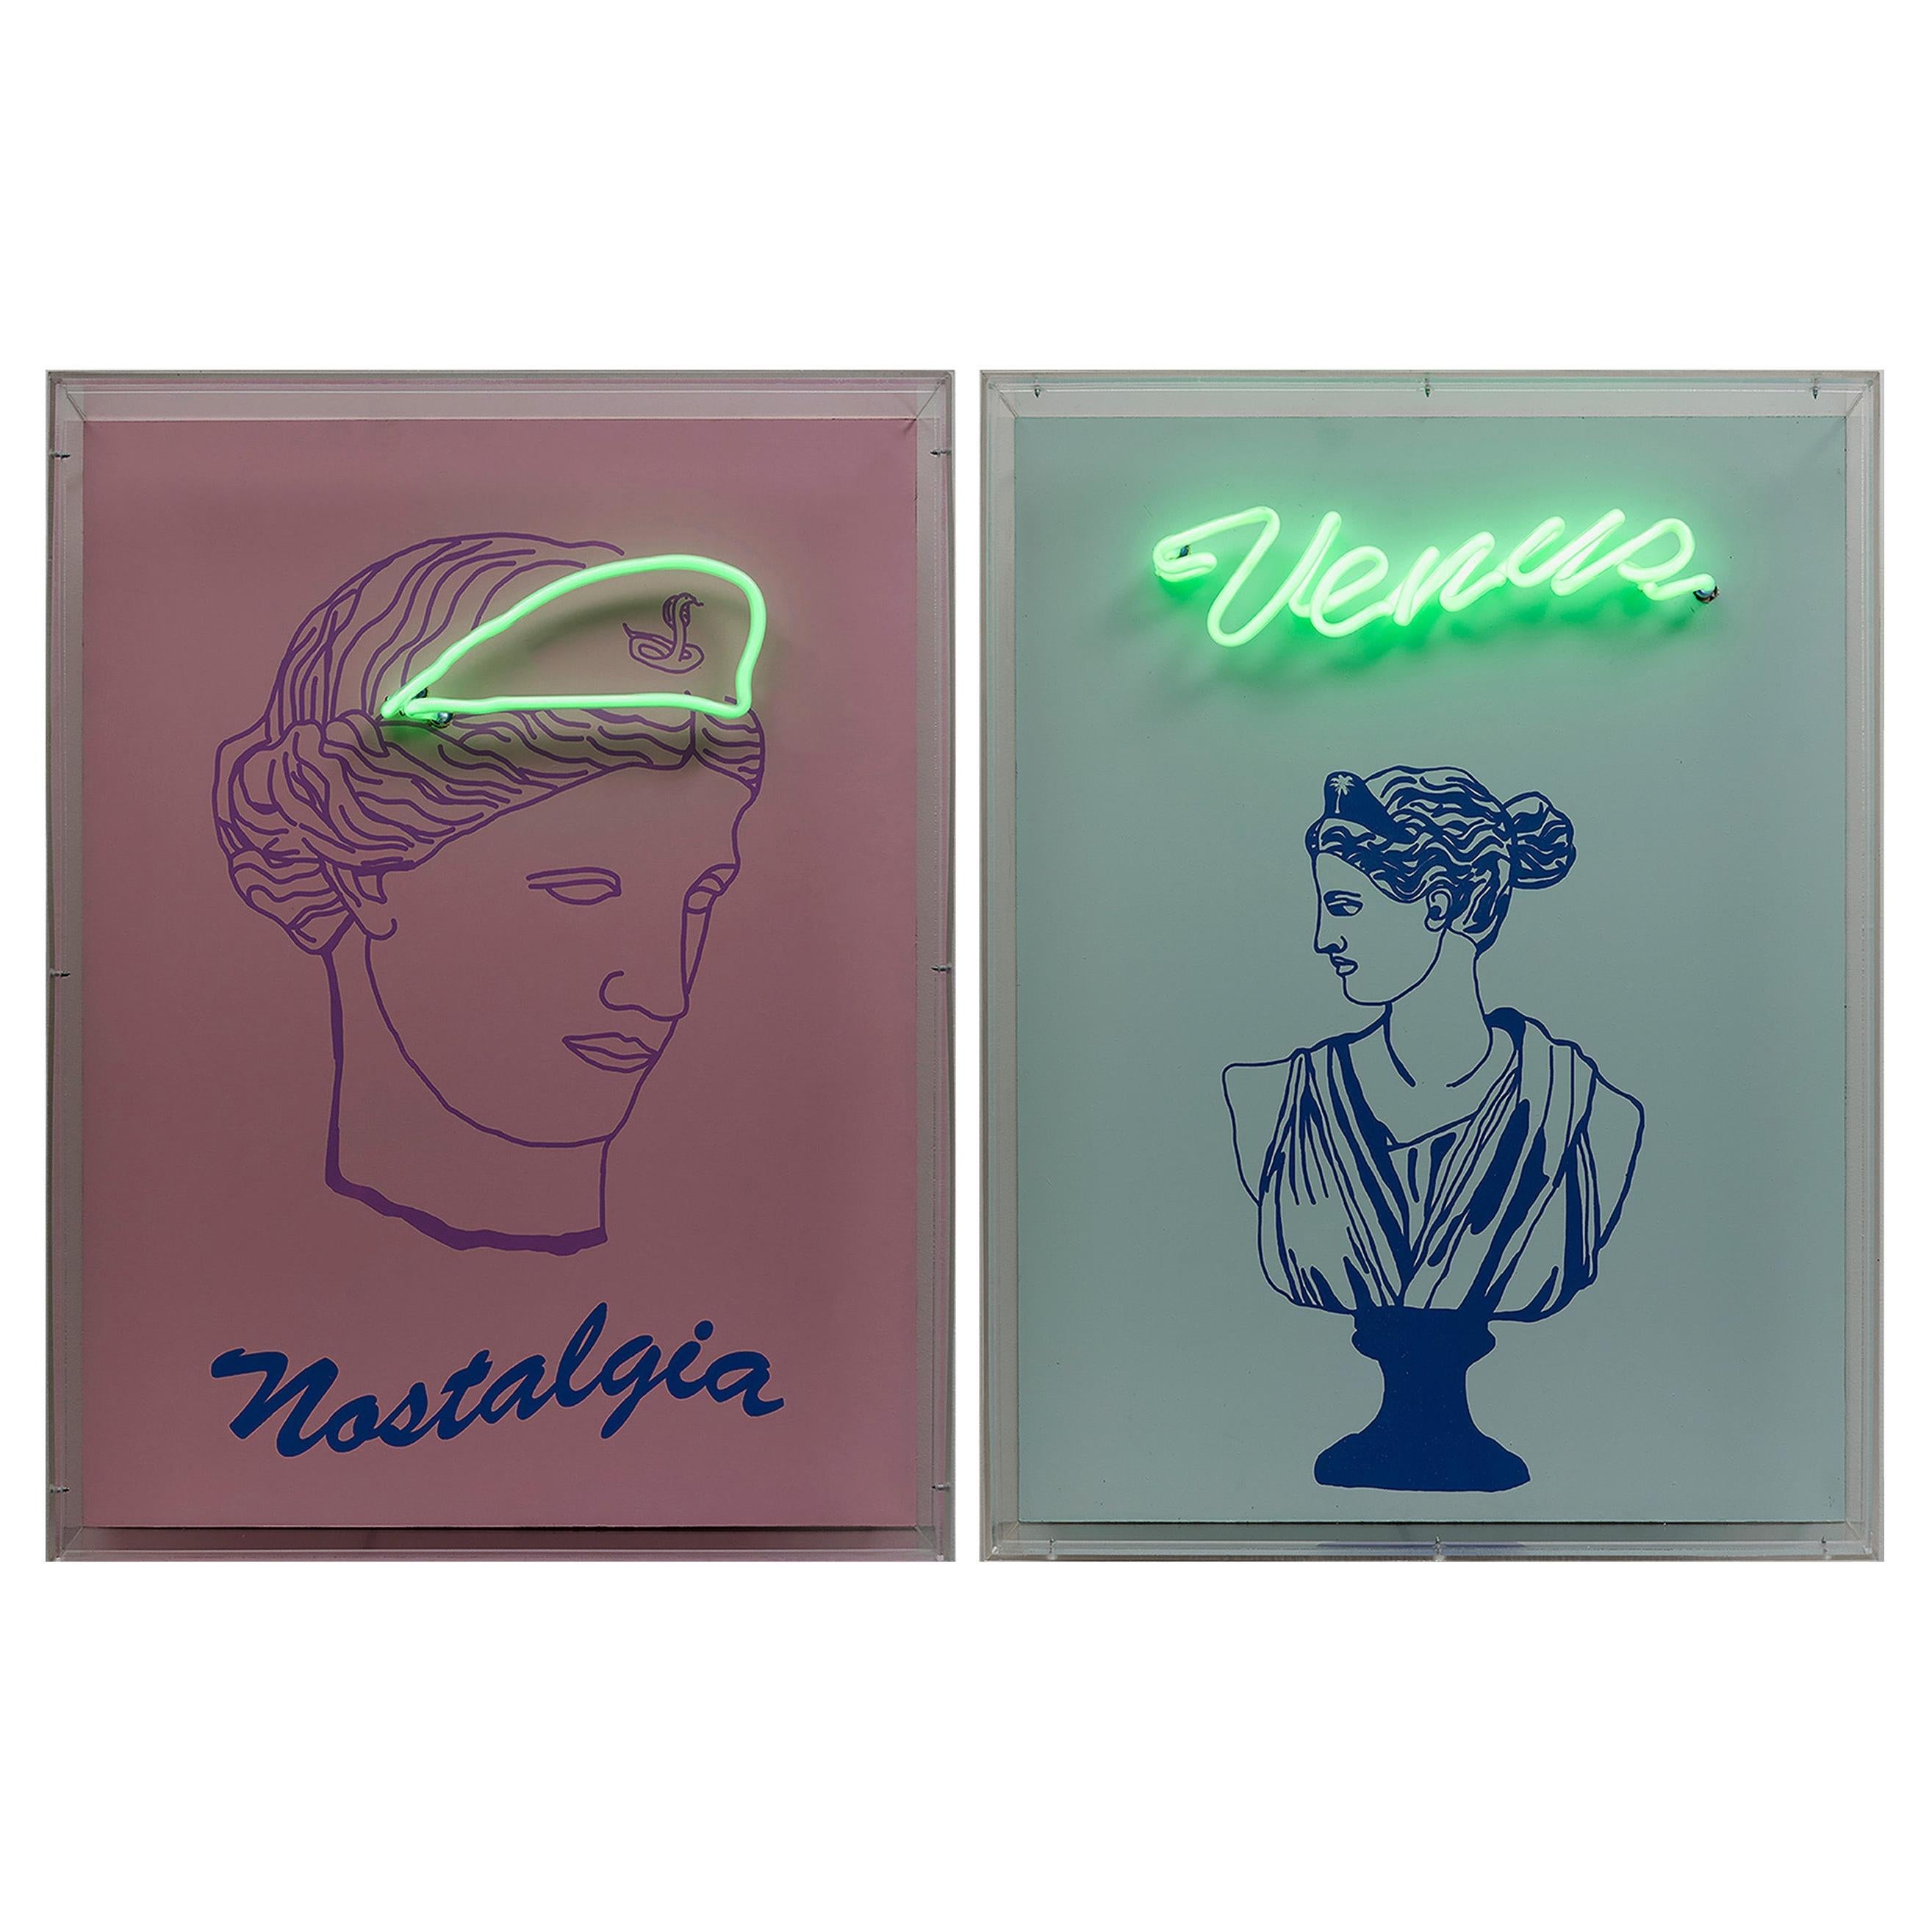 Nostalgia und Venus Diptychon. Neon-Lichtkasten Wandskulptur. 